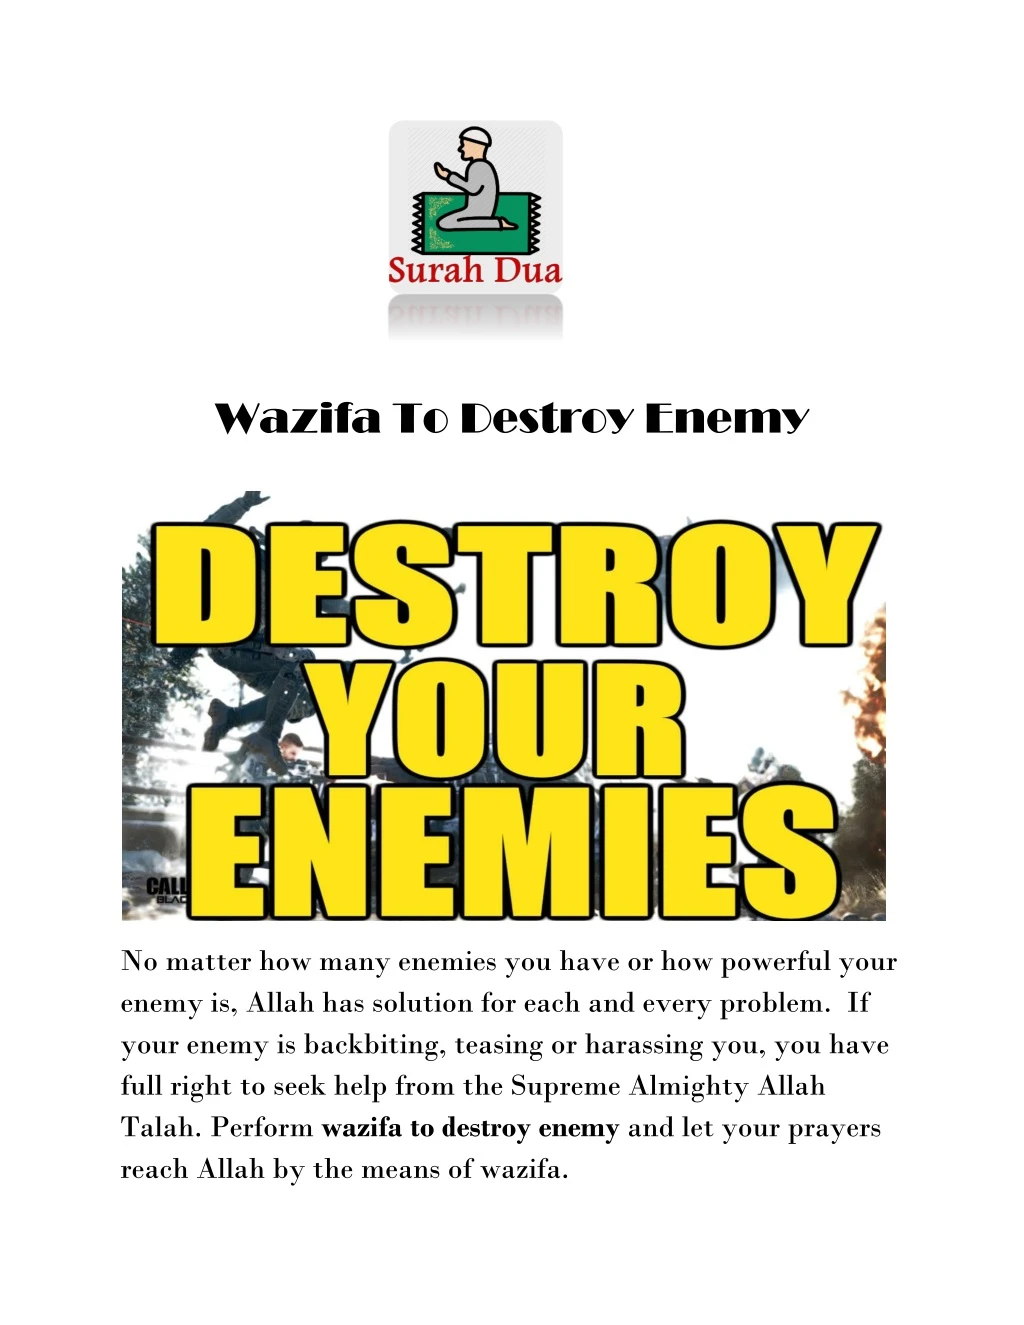 wazifa to destroy enemy